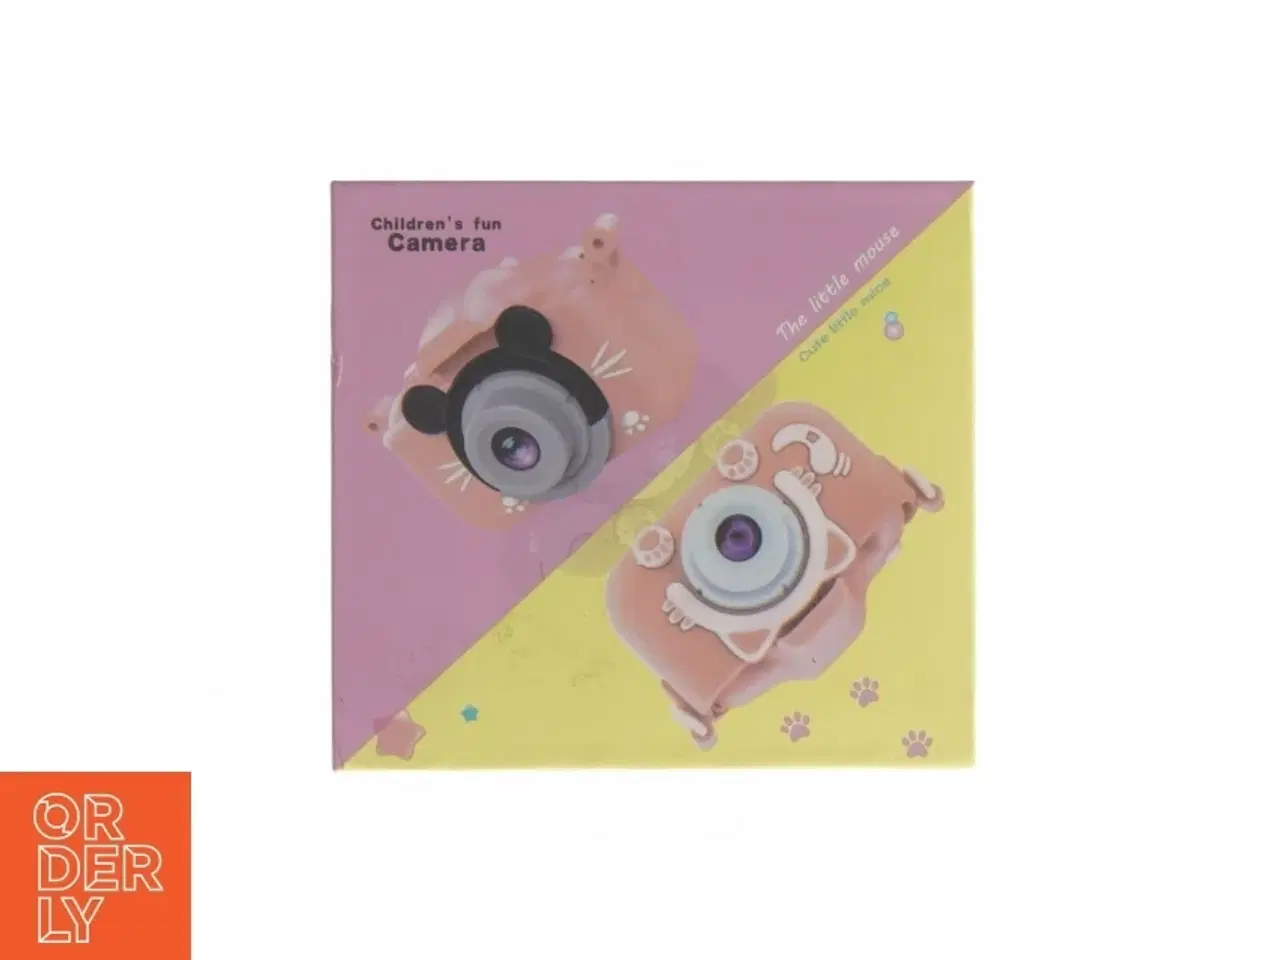 Billede 4 - Kamera til små børn med Minnie Mouse (str. 13 x 11 cm)